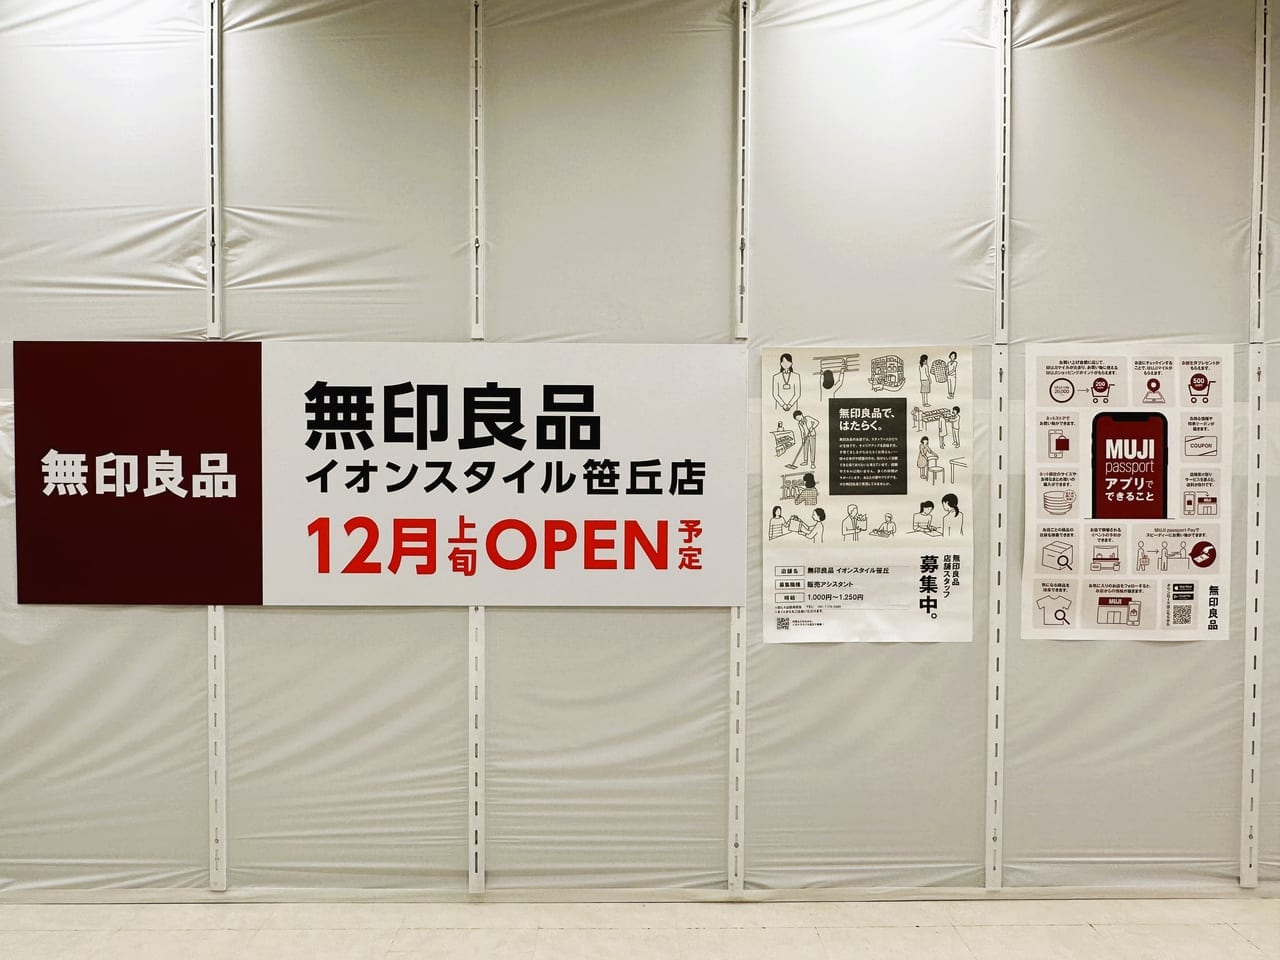 １２月上旬には『 無印良品イオンスタイル笹丘店 』が、新規オープン予定です！